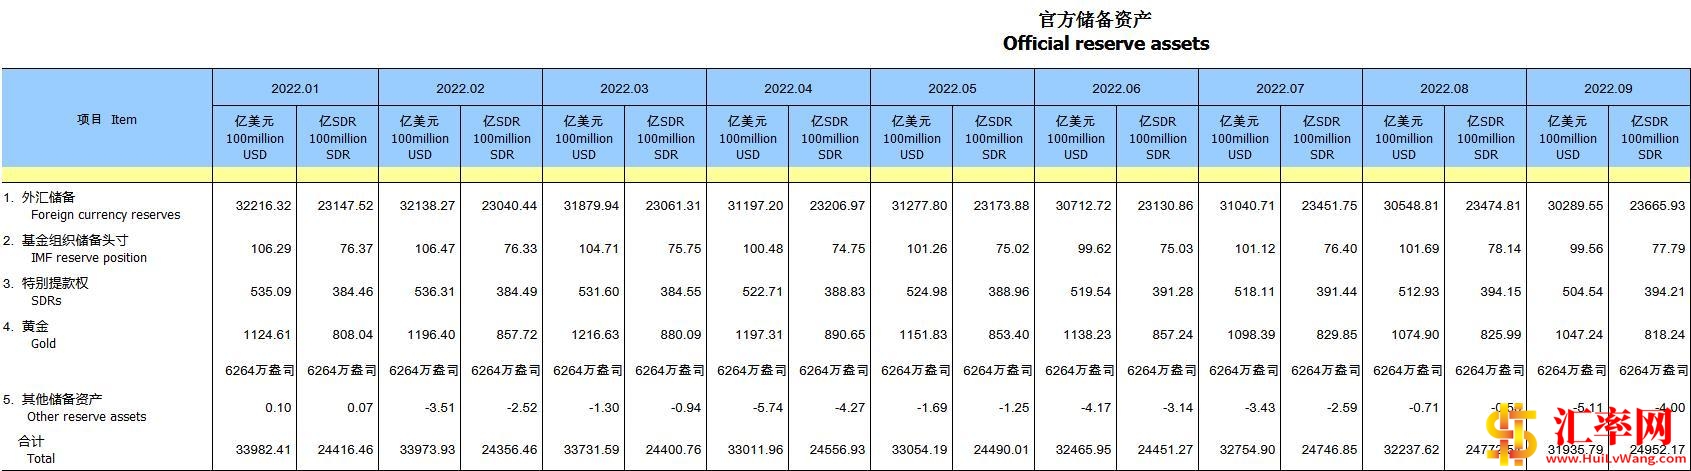 2022年9月末中国外汇储备30289.55亿美元 环比减少259.26亿美元